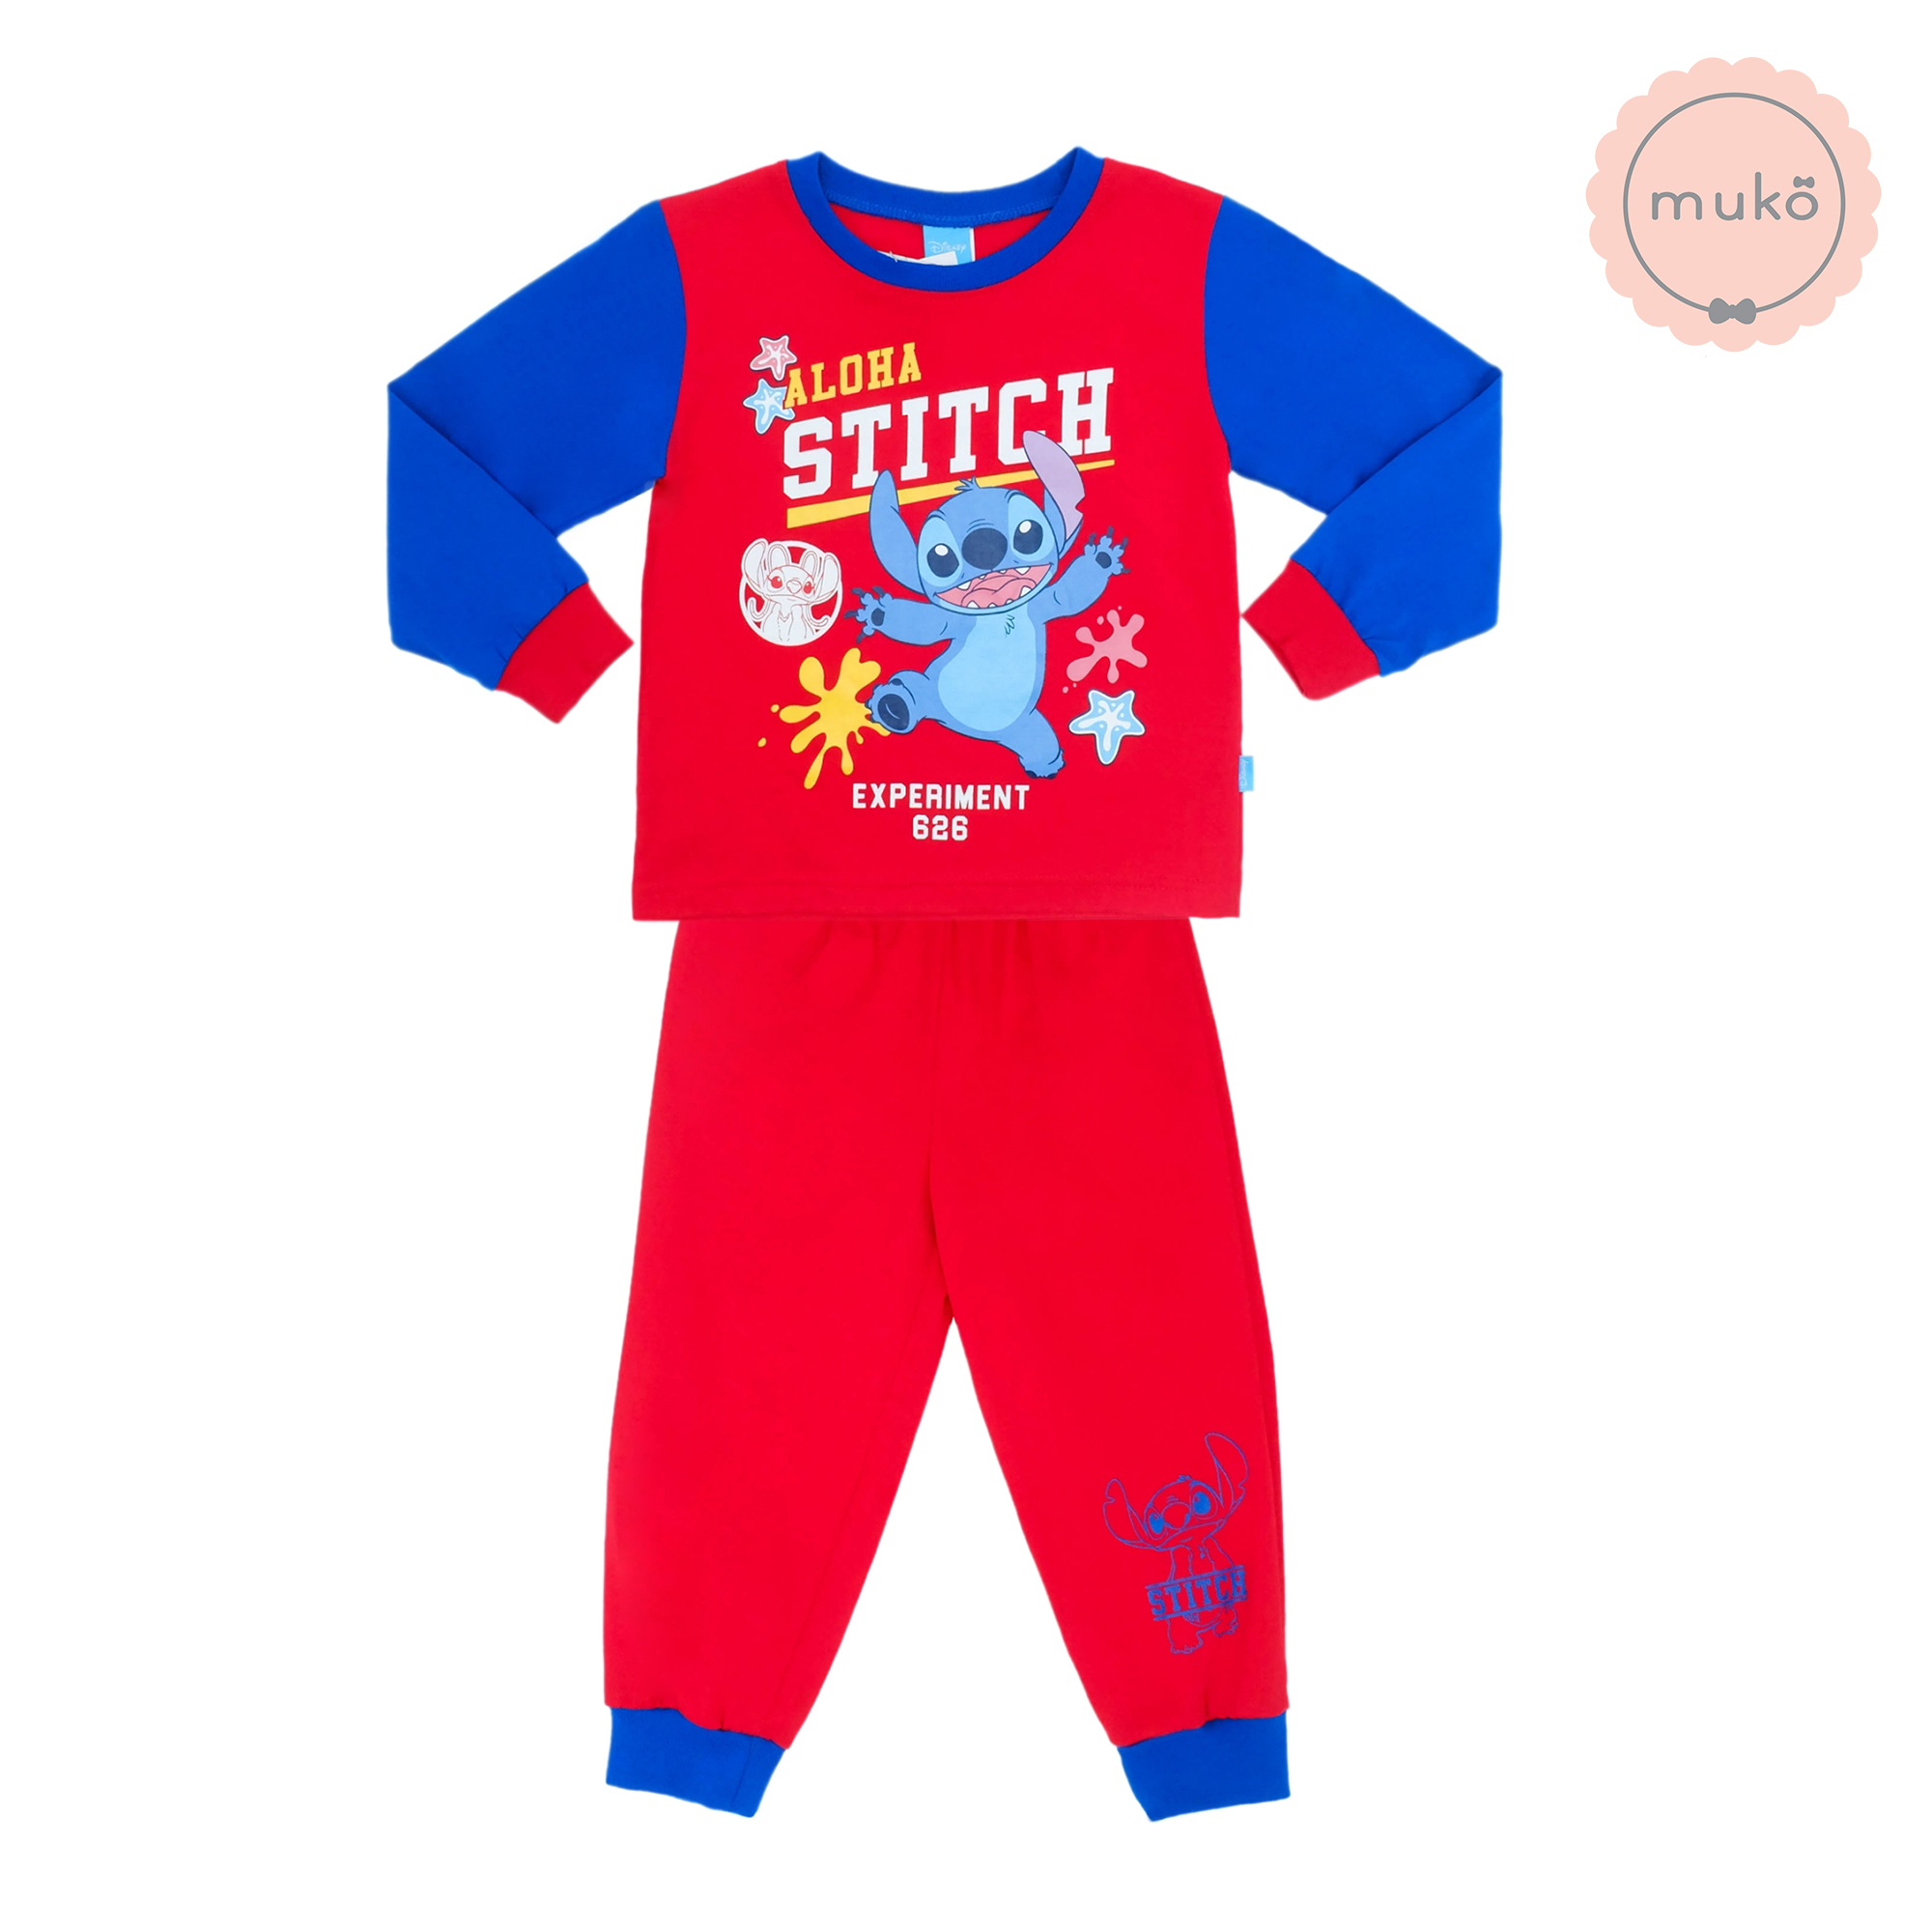 ชุดเด็ก 6 เดือน - 1 ขวบ แขนยาว-ขายาว (Size 1) DLS127-691-3-Red 1 ลาย สติช Stitch สีแดง (แขนน้ำเงินเข้ม)